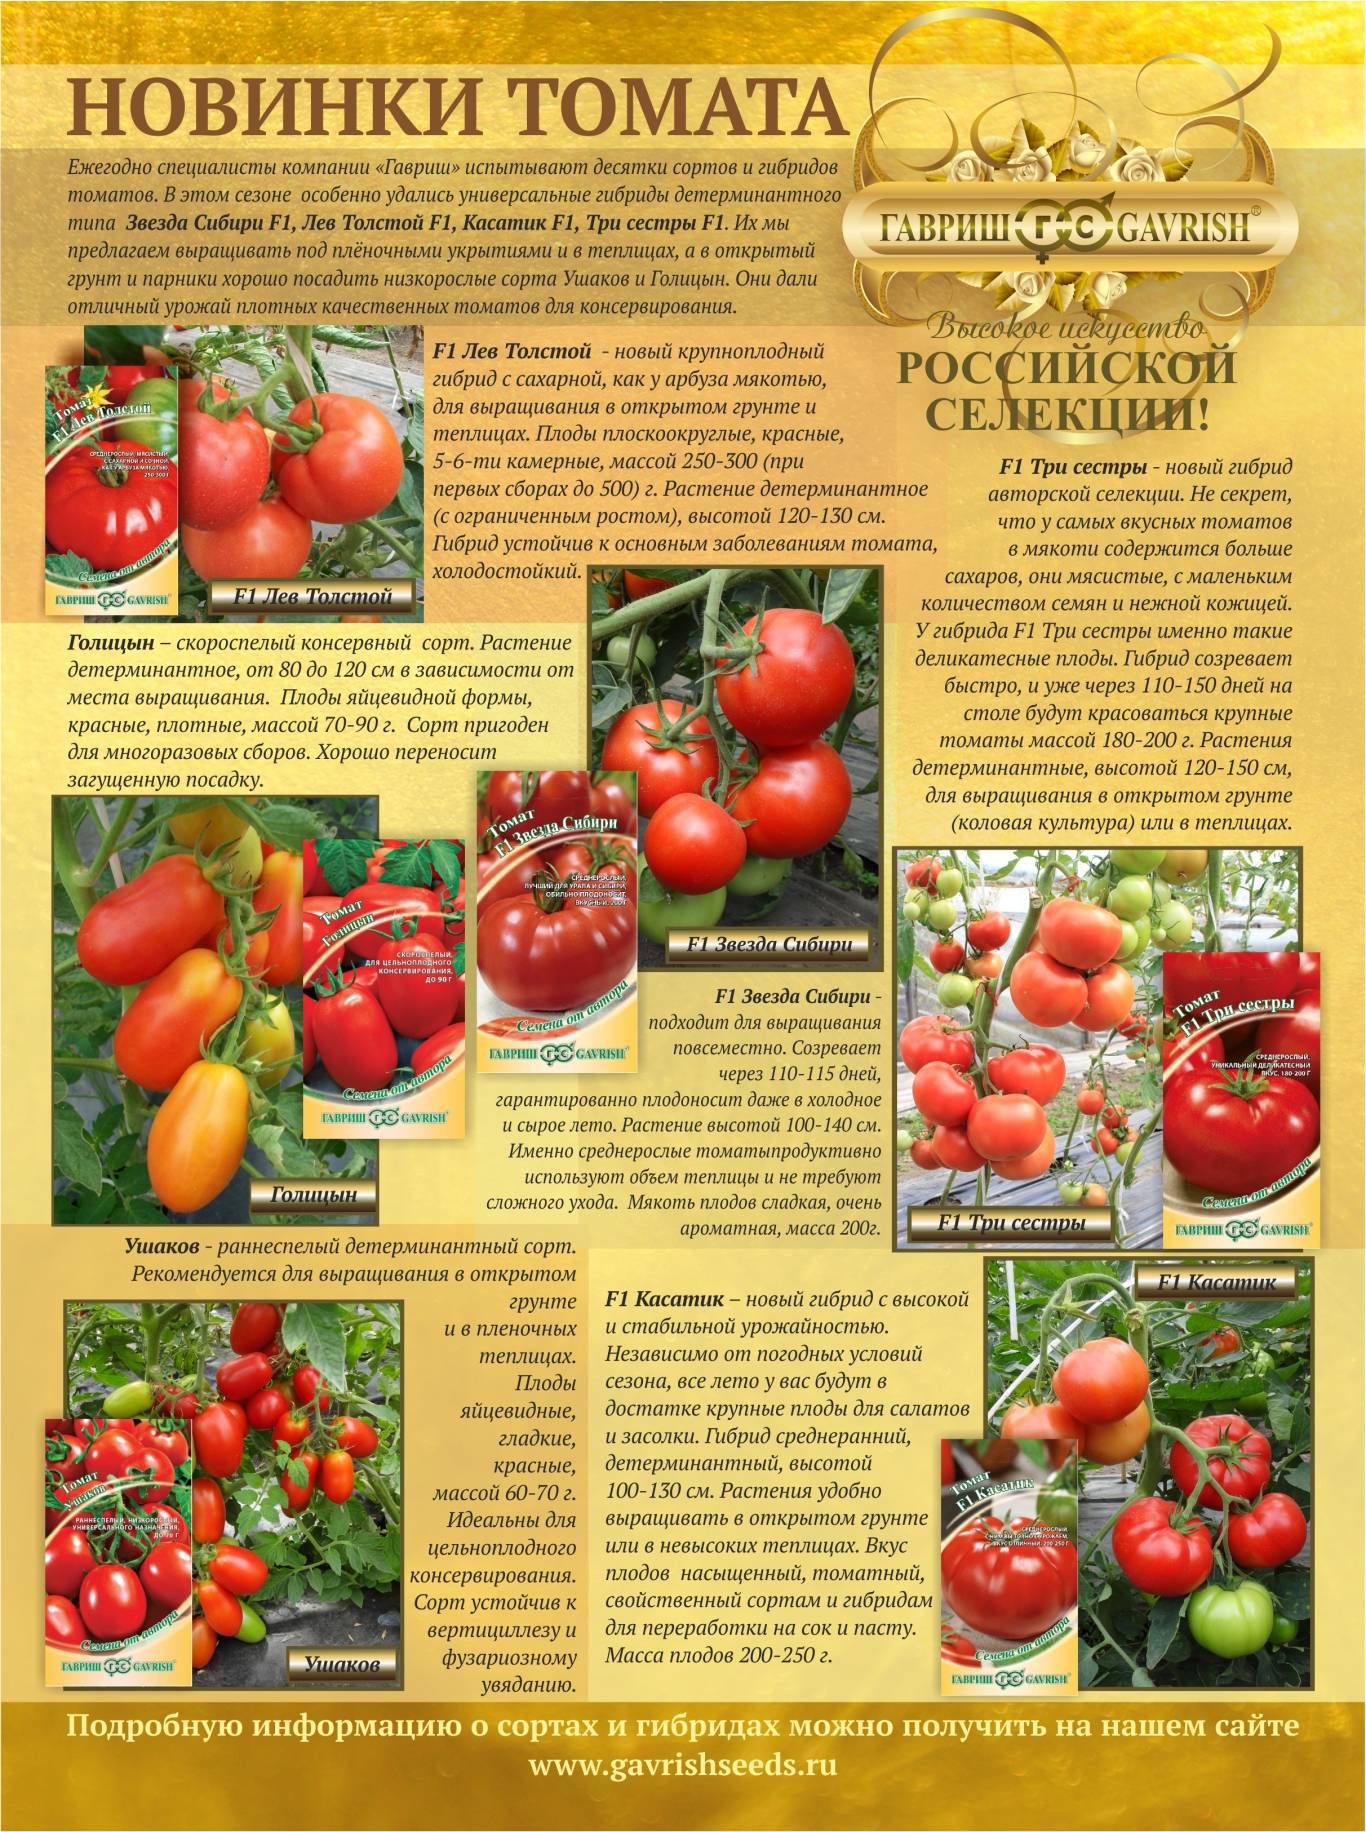 Описание сорта томата сахарок, его урожайность и выращивание - всё про сады